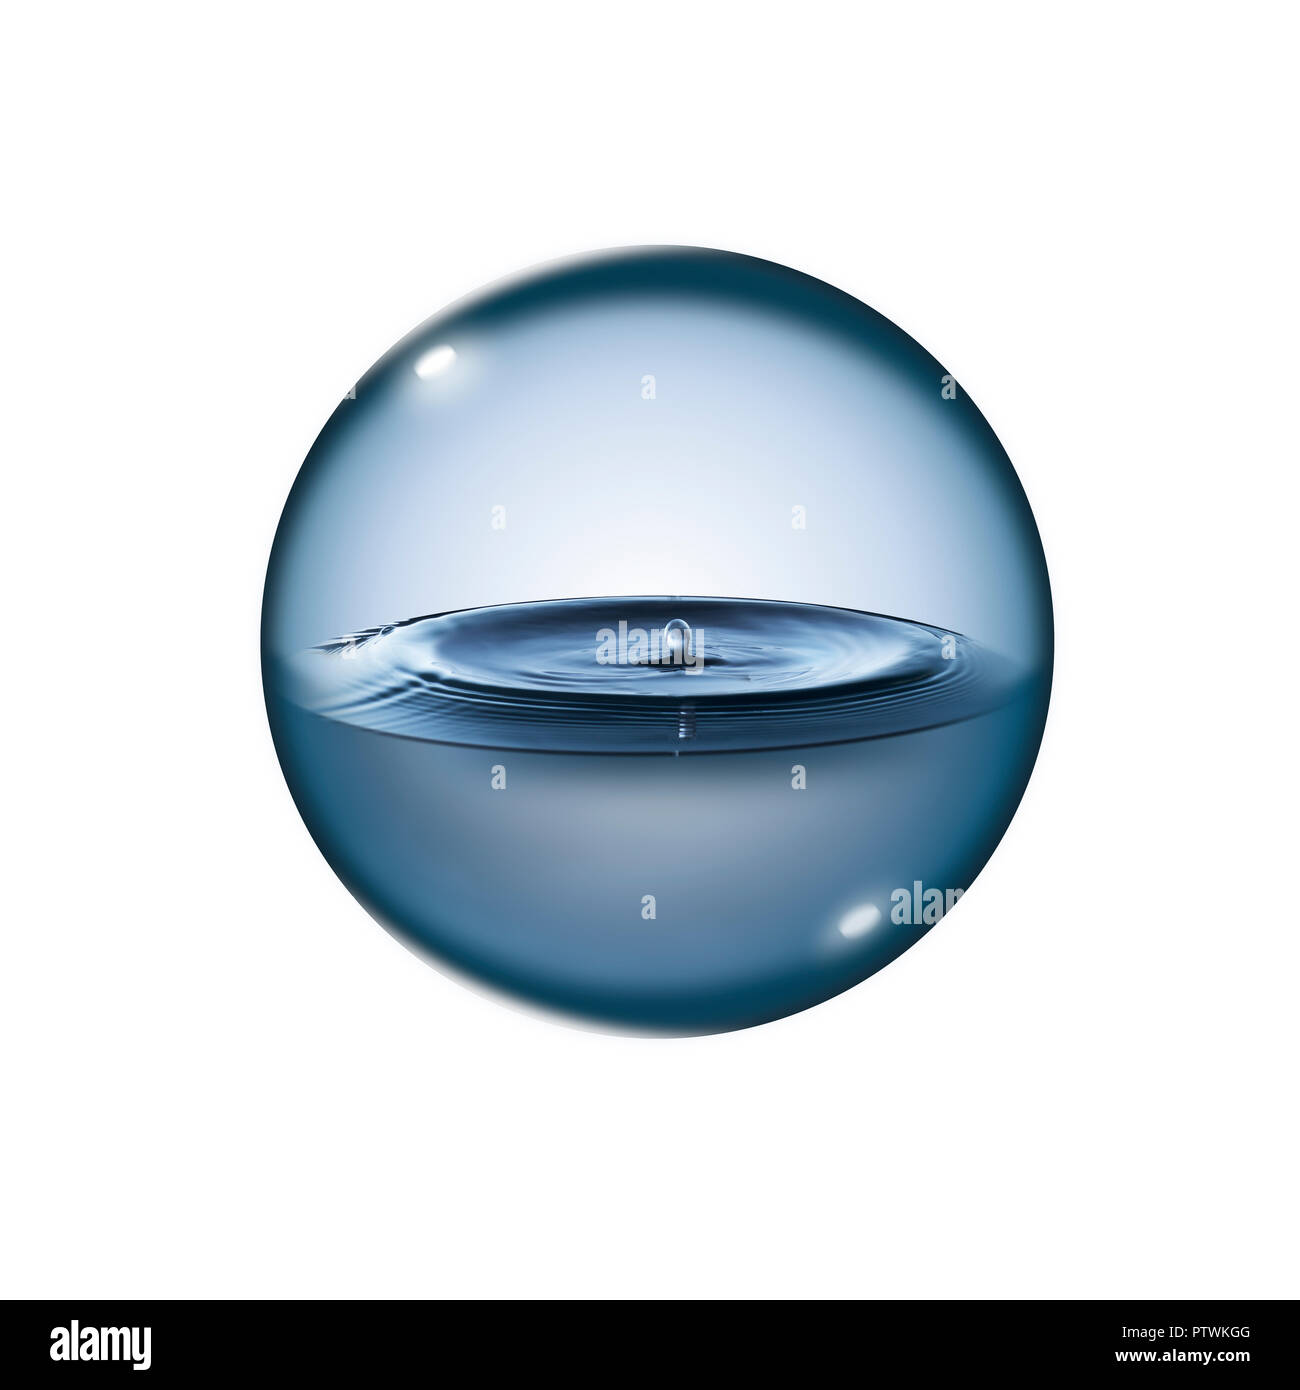 Transparent liquid in sphere against plain white background, digital composite Stock Photo